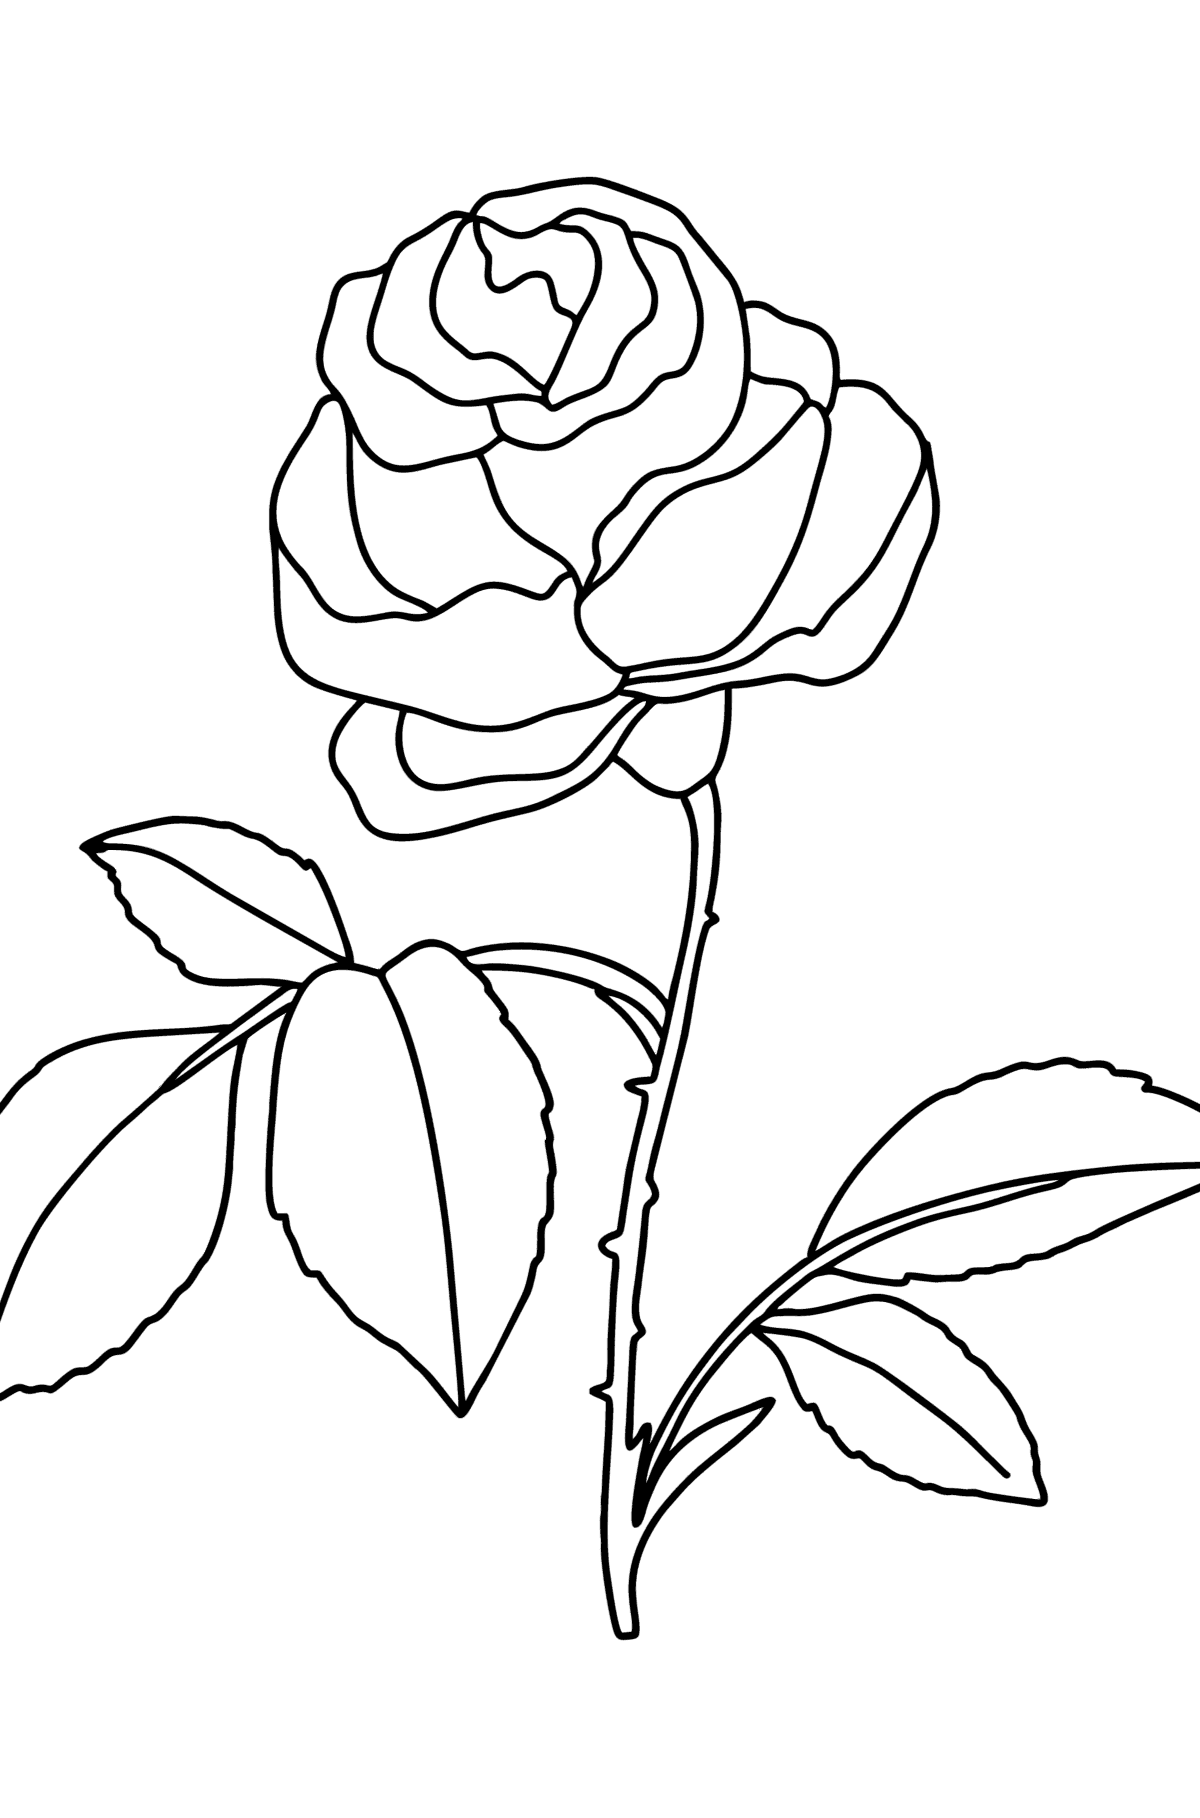 Desenho de Rosa vermelha para colorir - Imagens para Colorir para Crianças